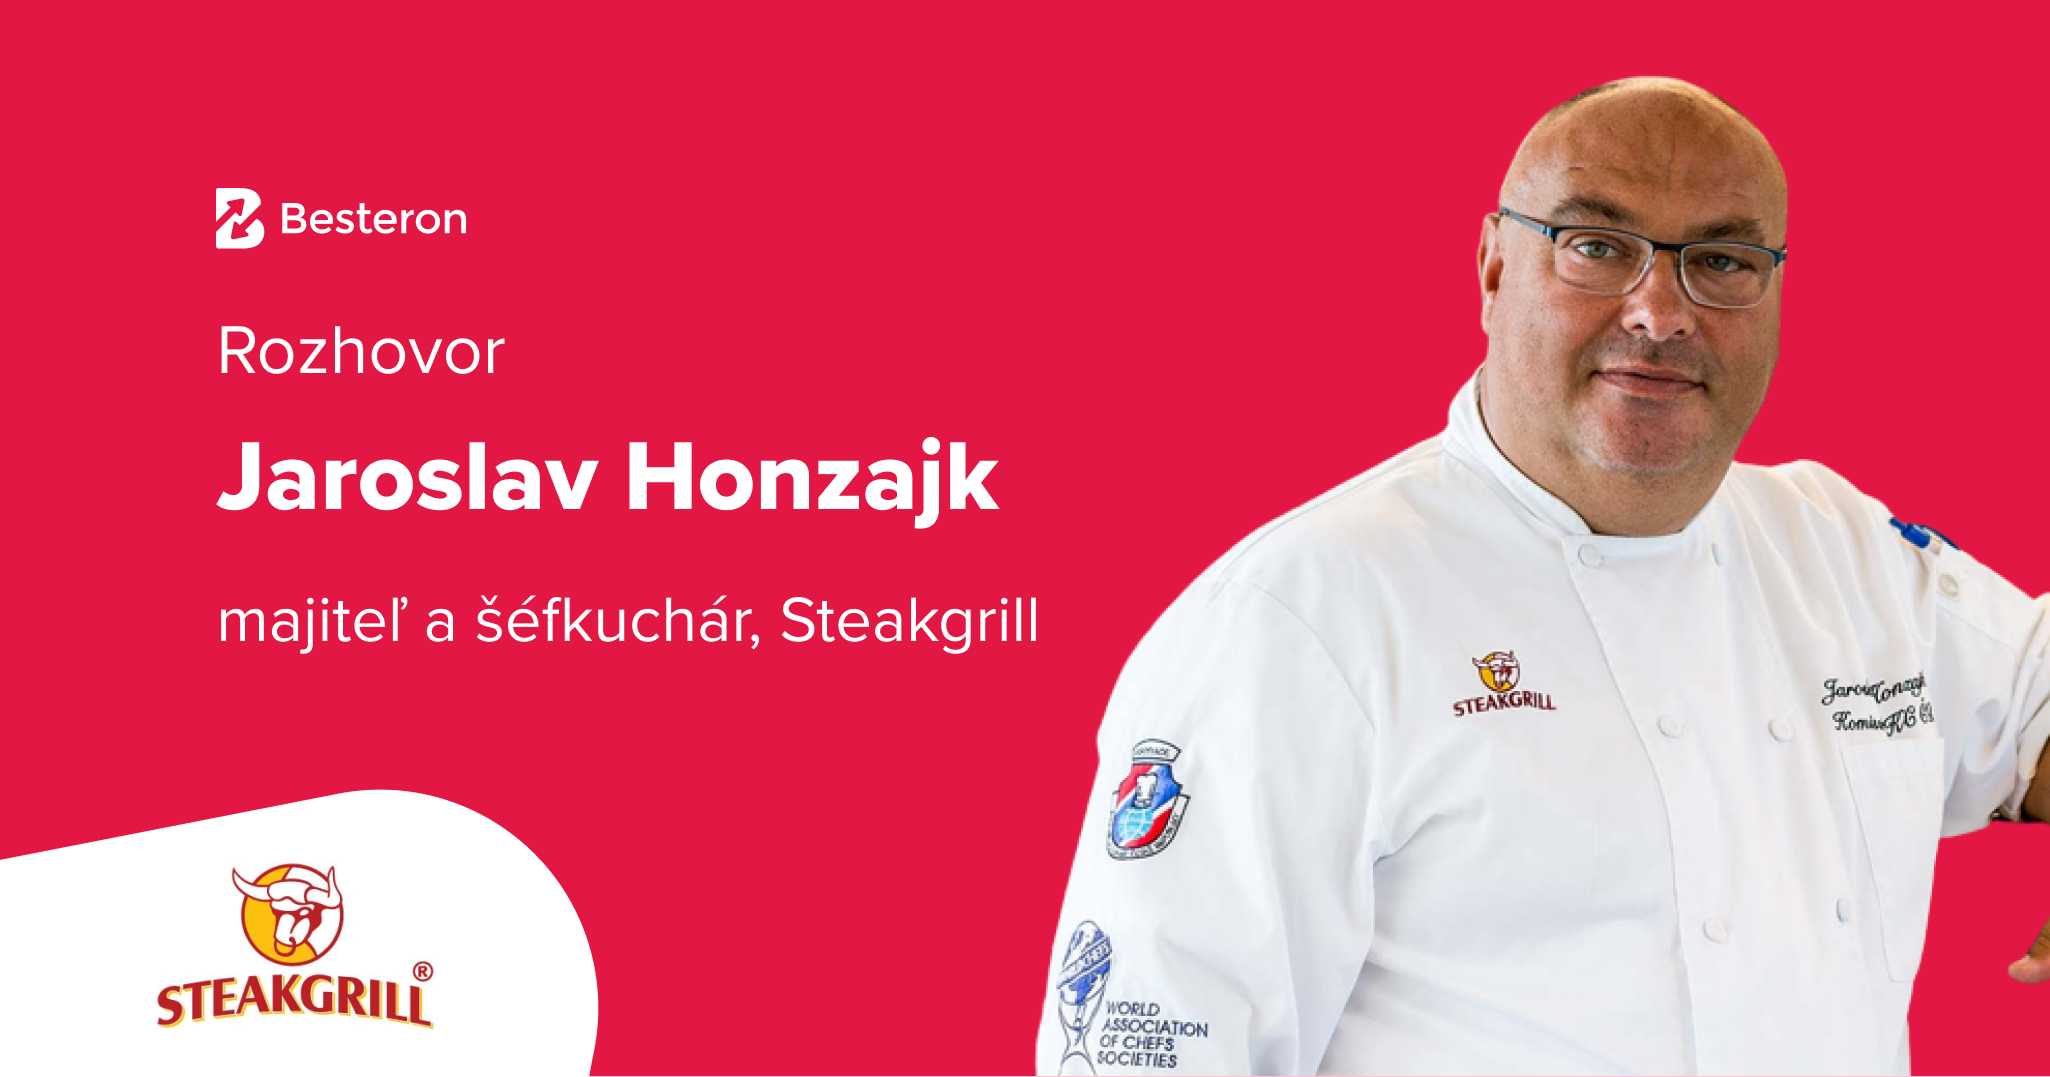 Jaroslav Honzajk, Steakgrill: Nebojte sa inovatívnych nápadov